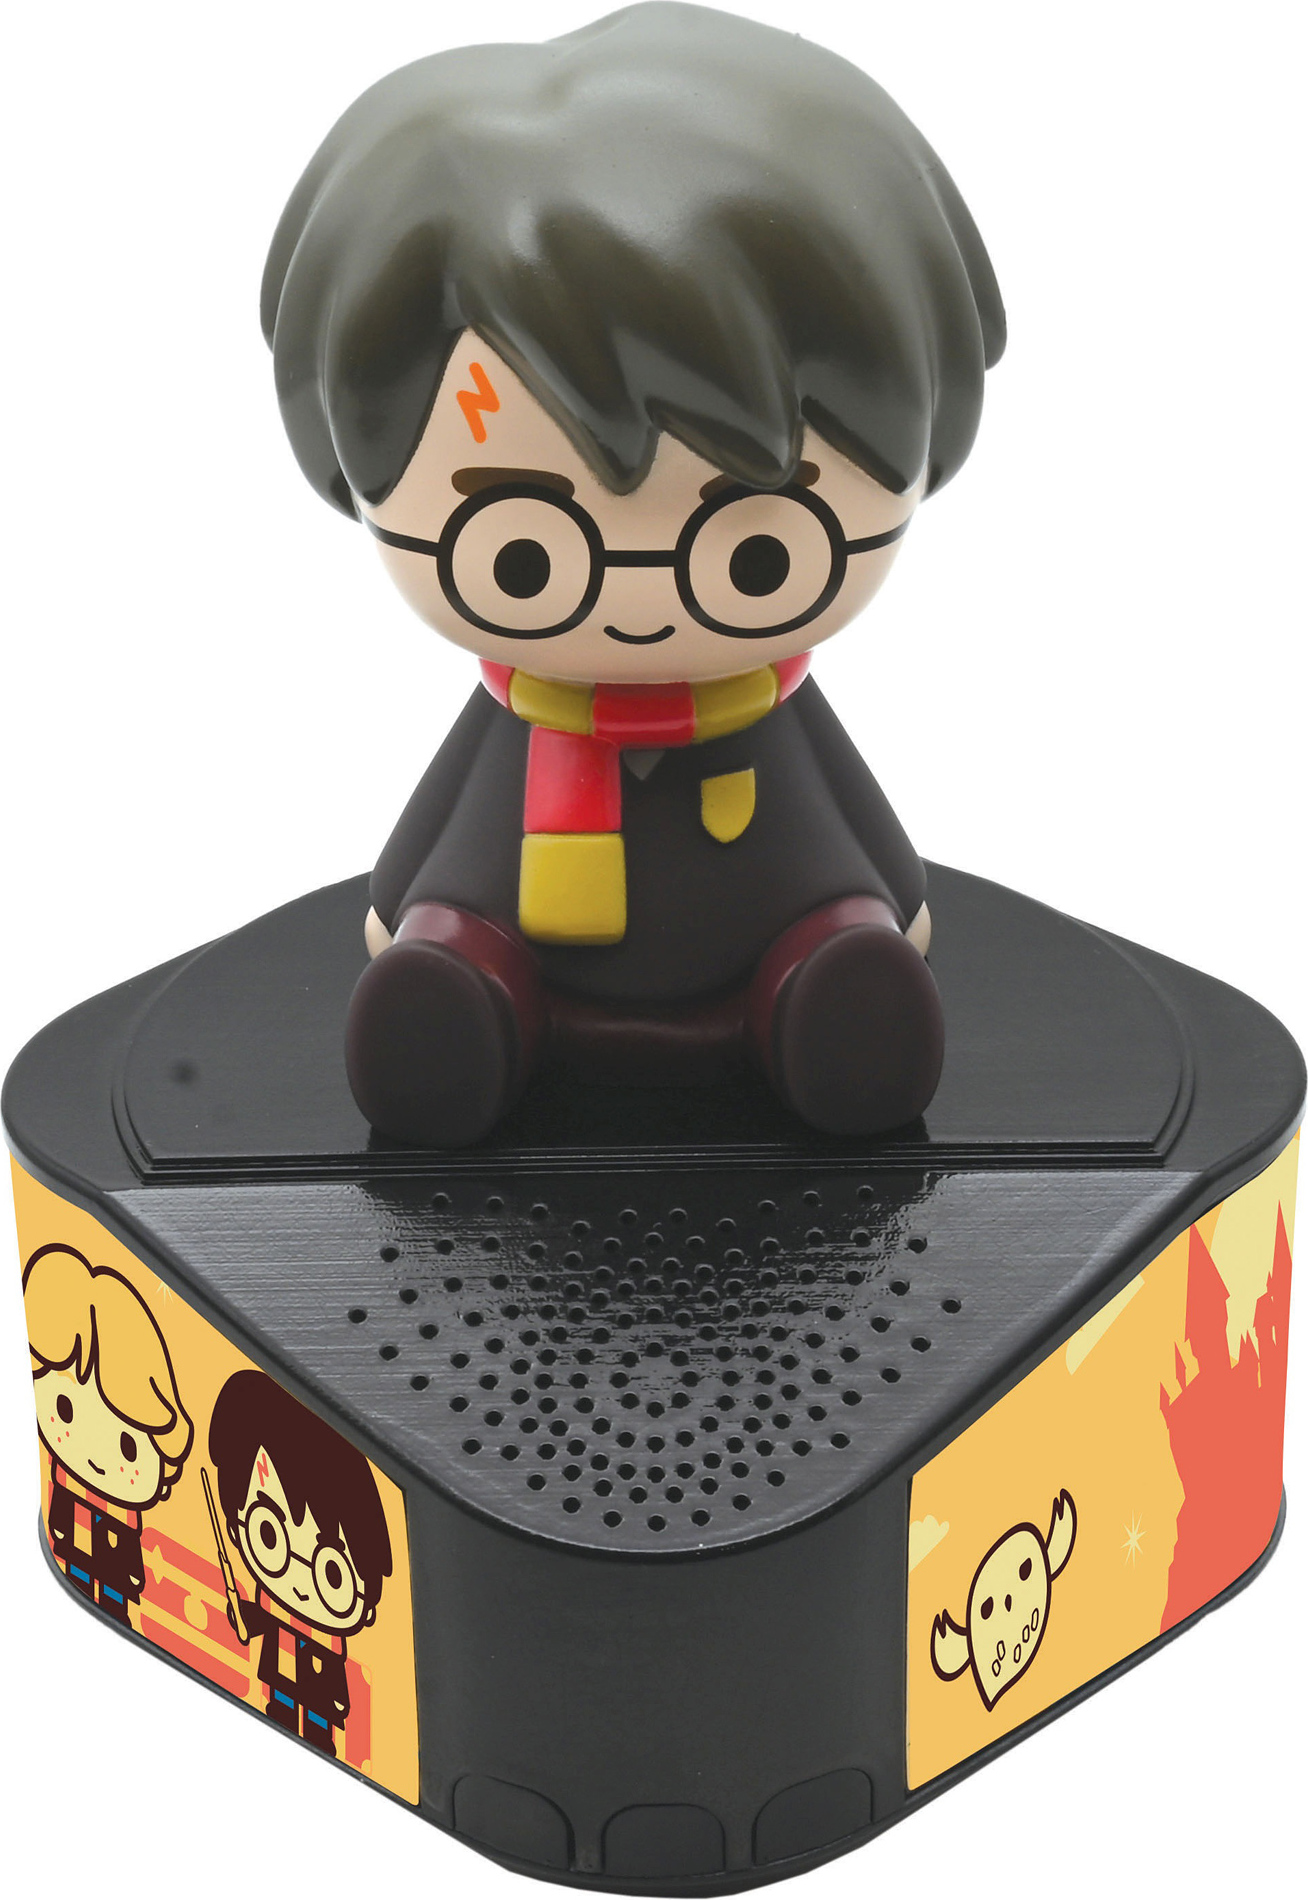 Reproduktor Bluetooth se svítící figurkou Harryho Pottera